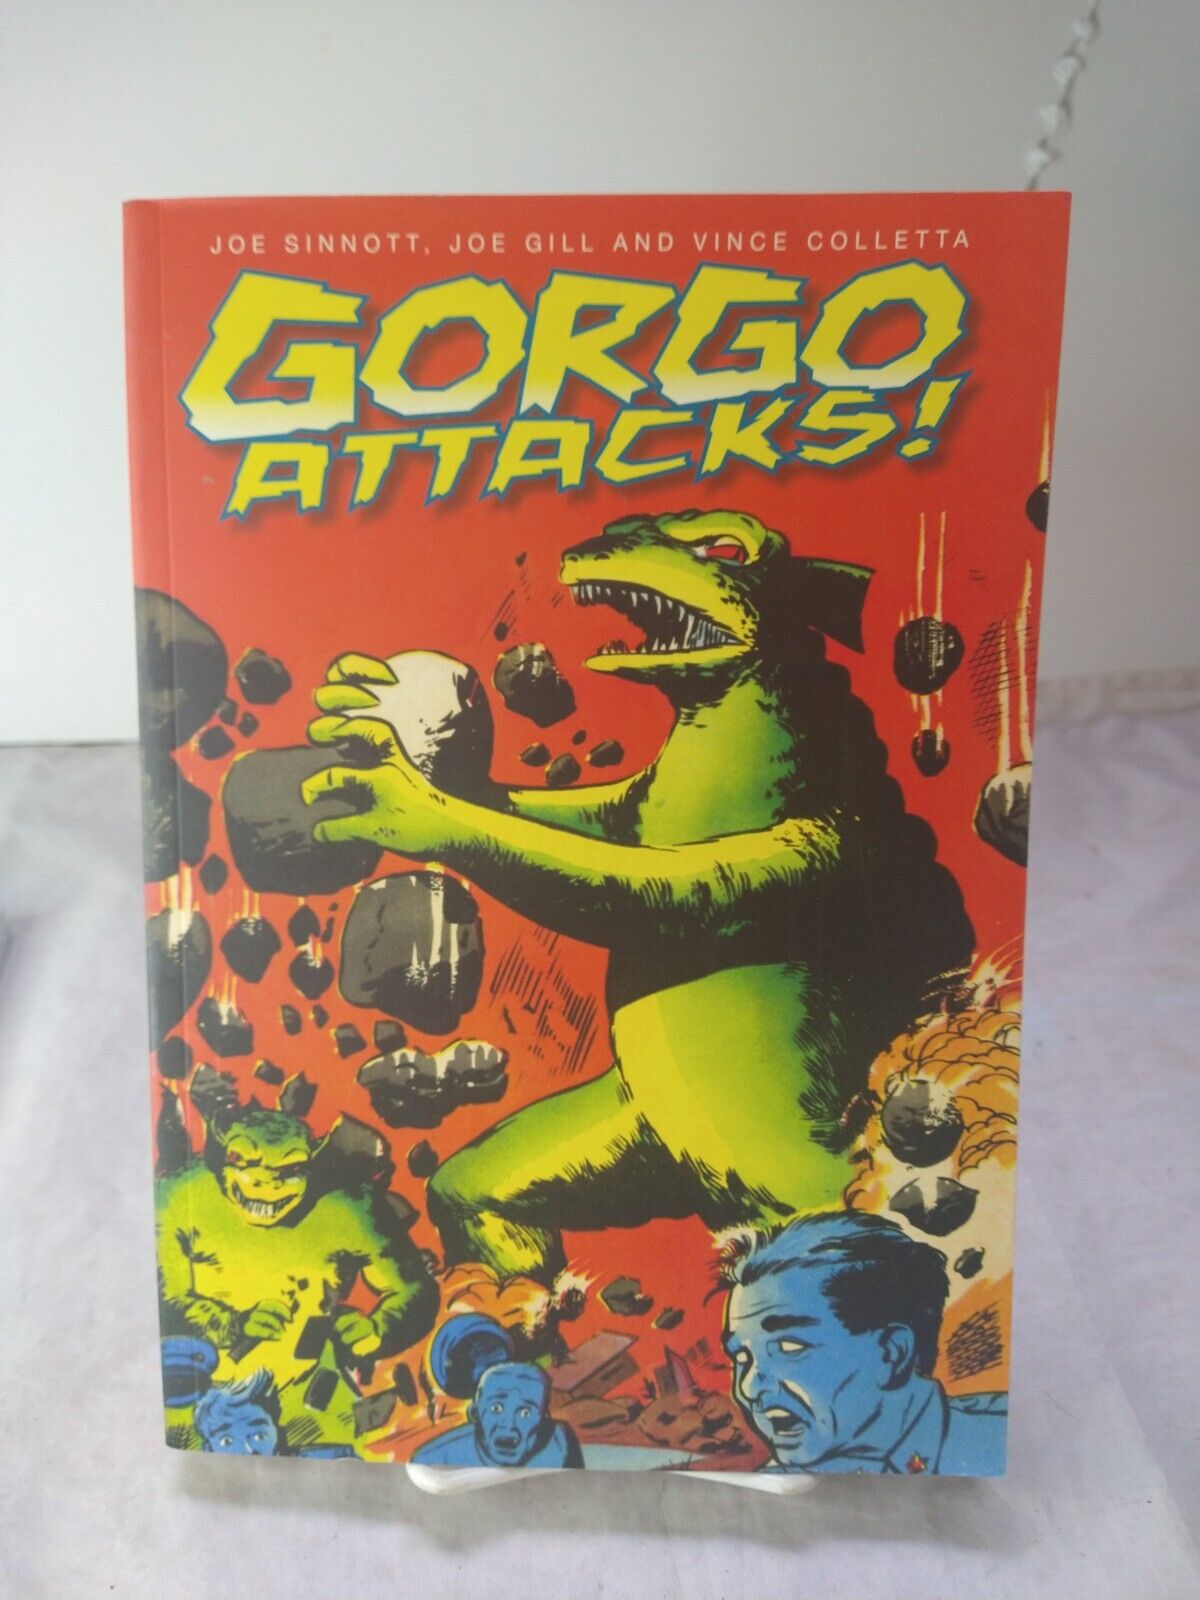 Gorgo Attacks Paperback Joe Sinnott, Joe Gill, and Vince Colletta